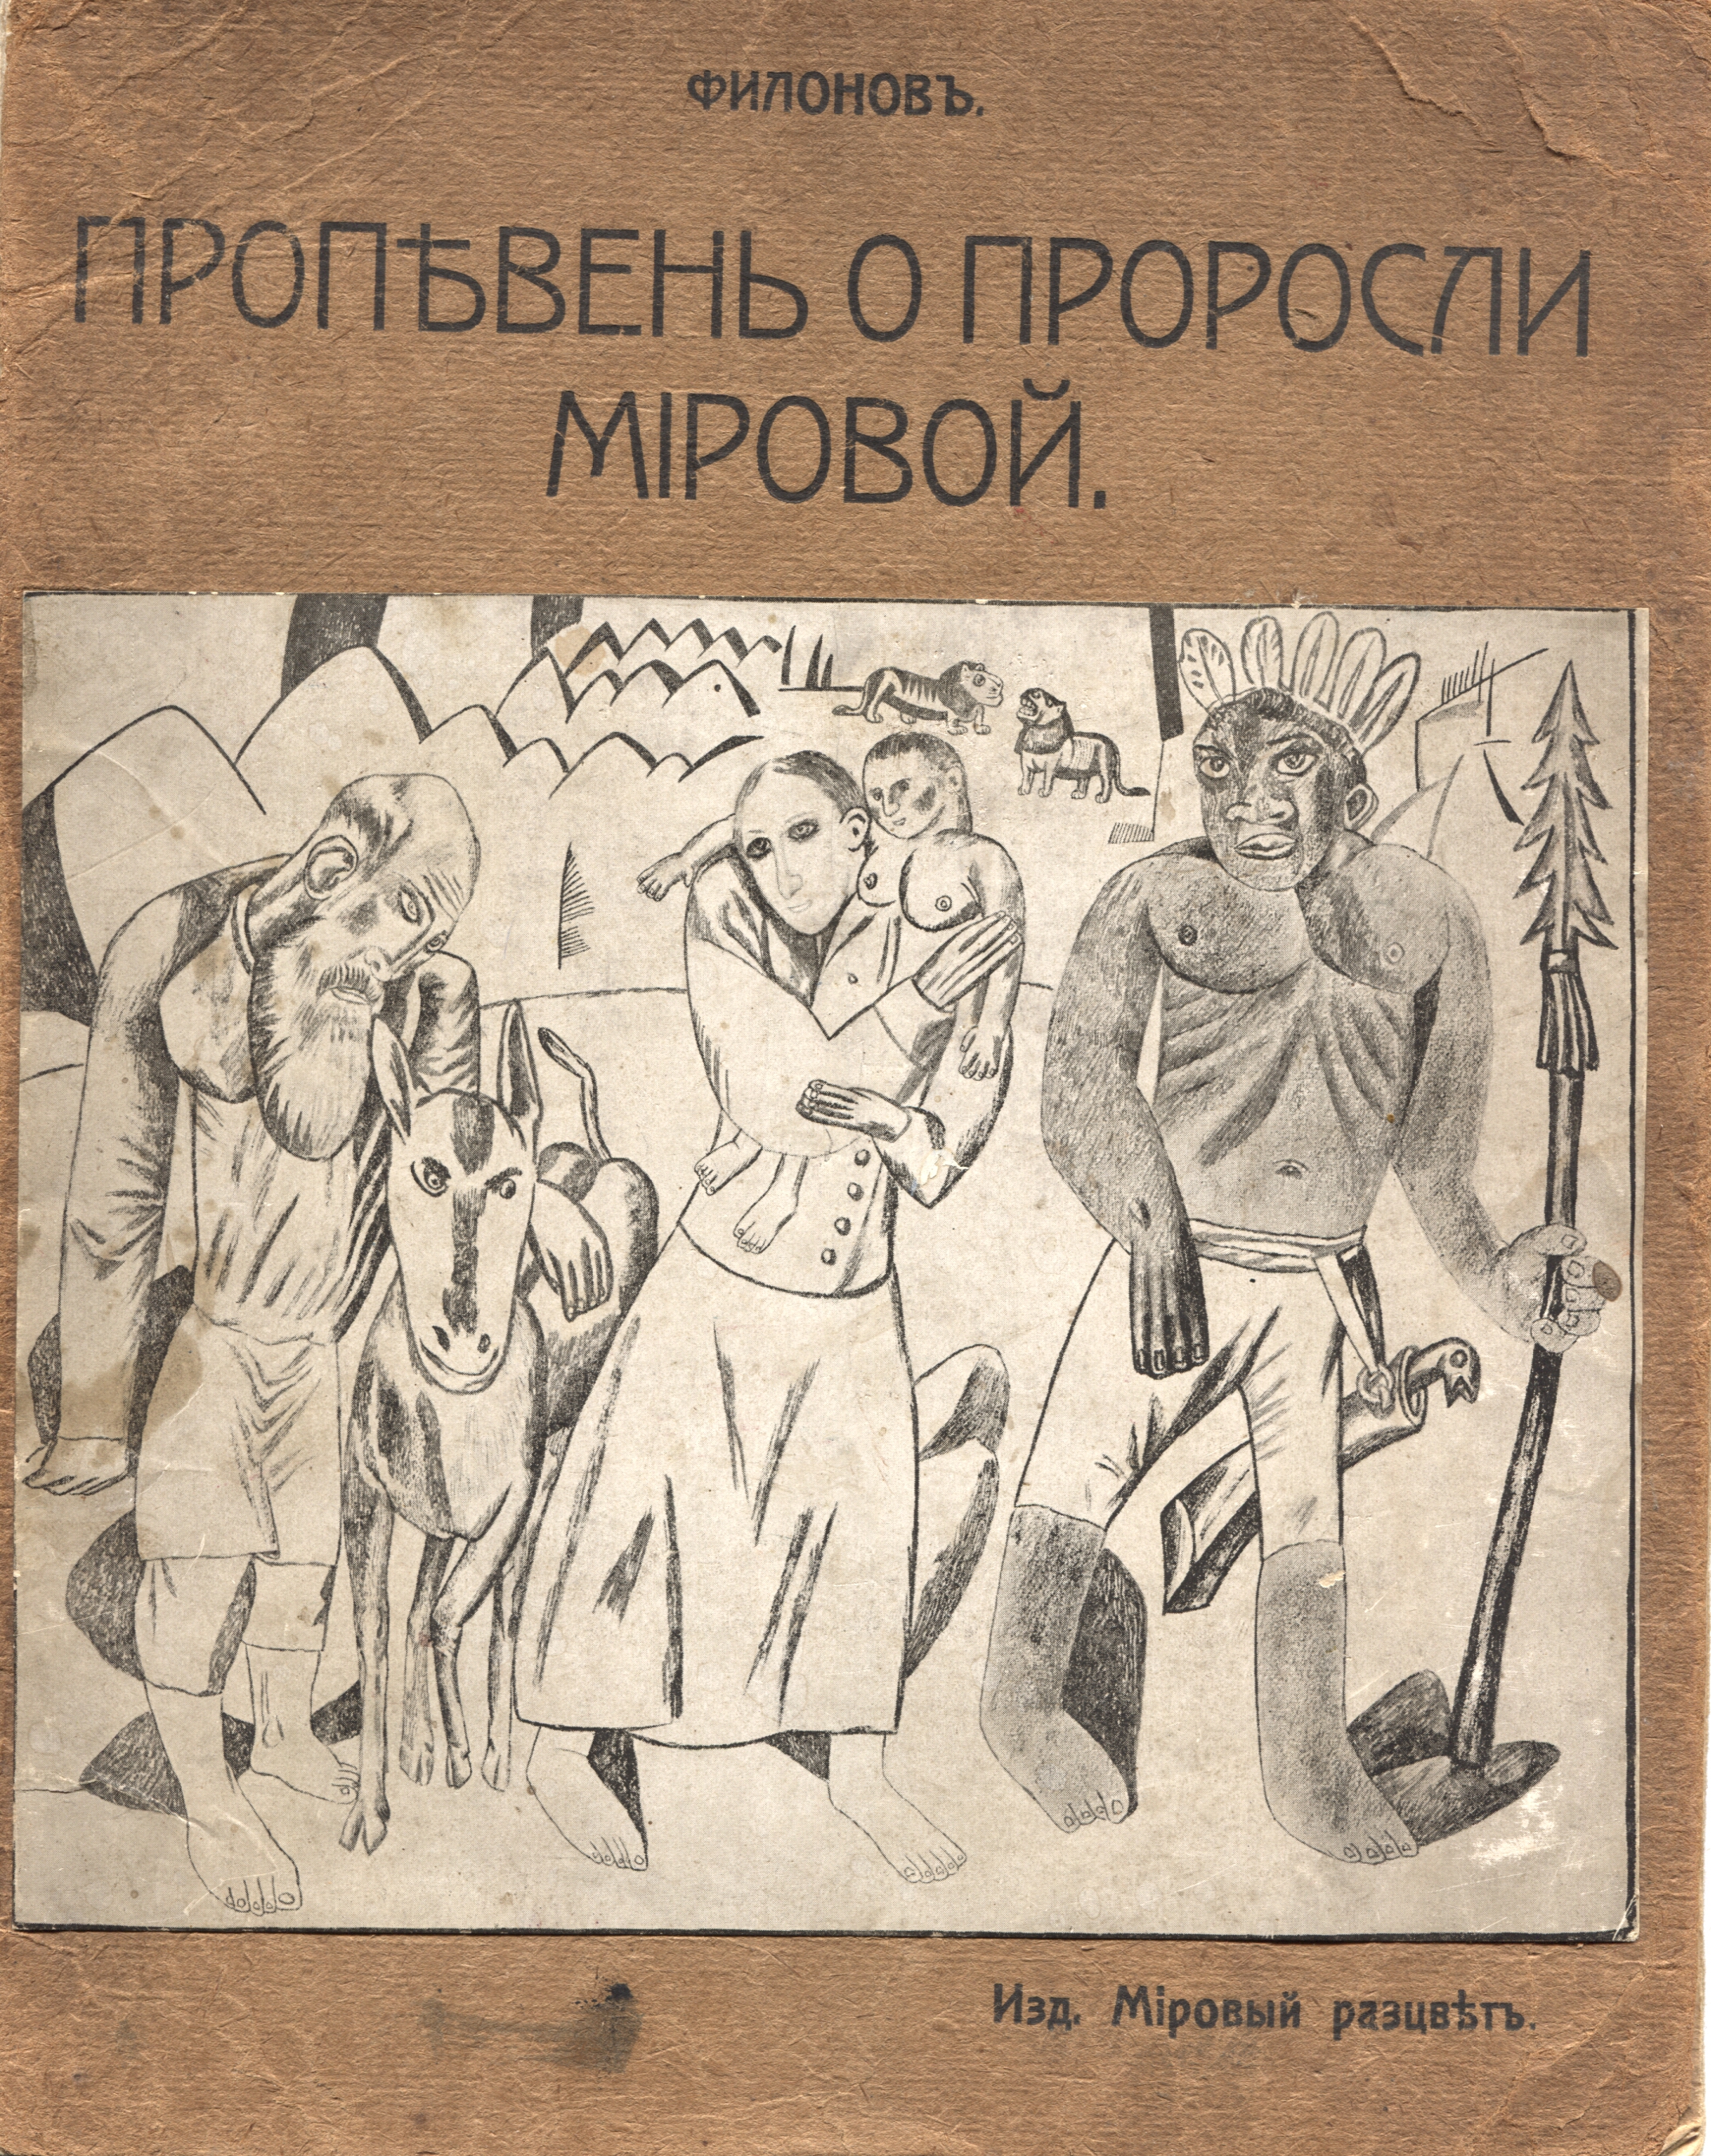 Пропевень о проросли мировой. Филонов. Издательство Мировой расцвет, 1915 год